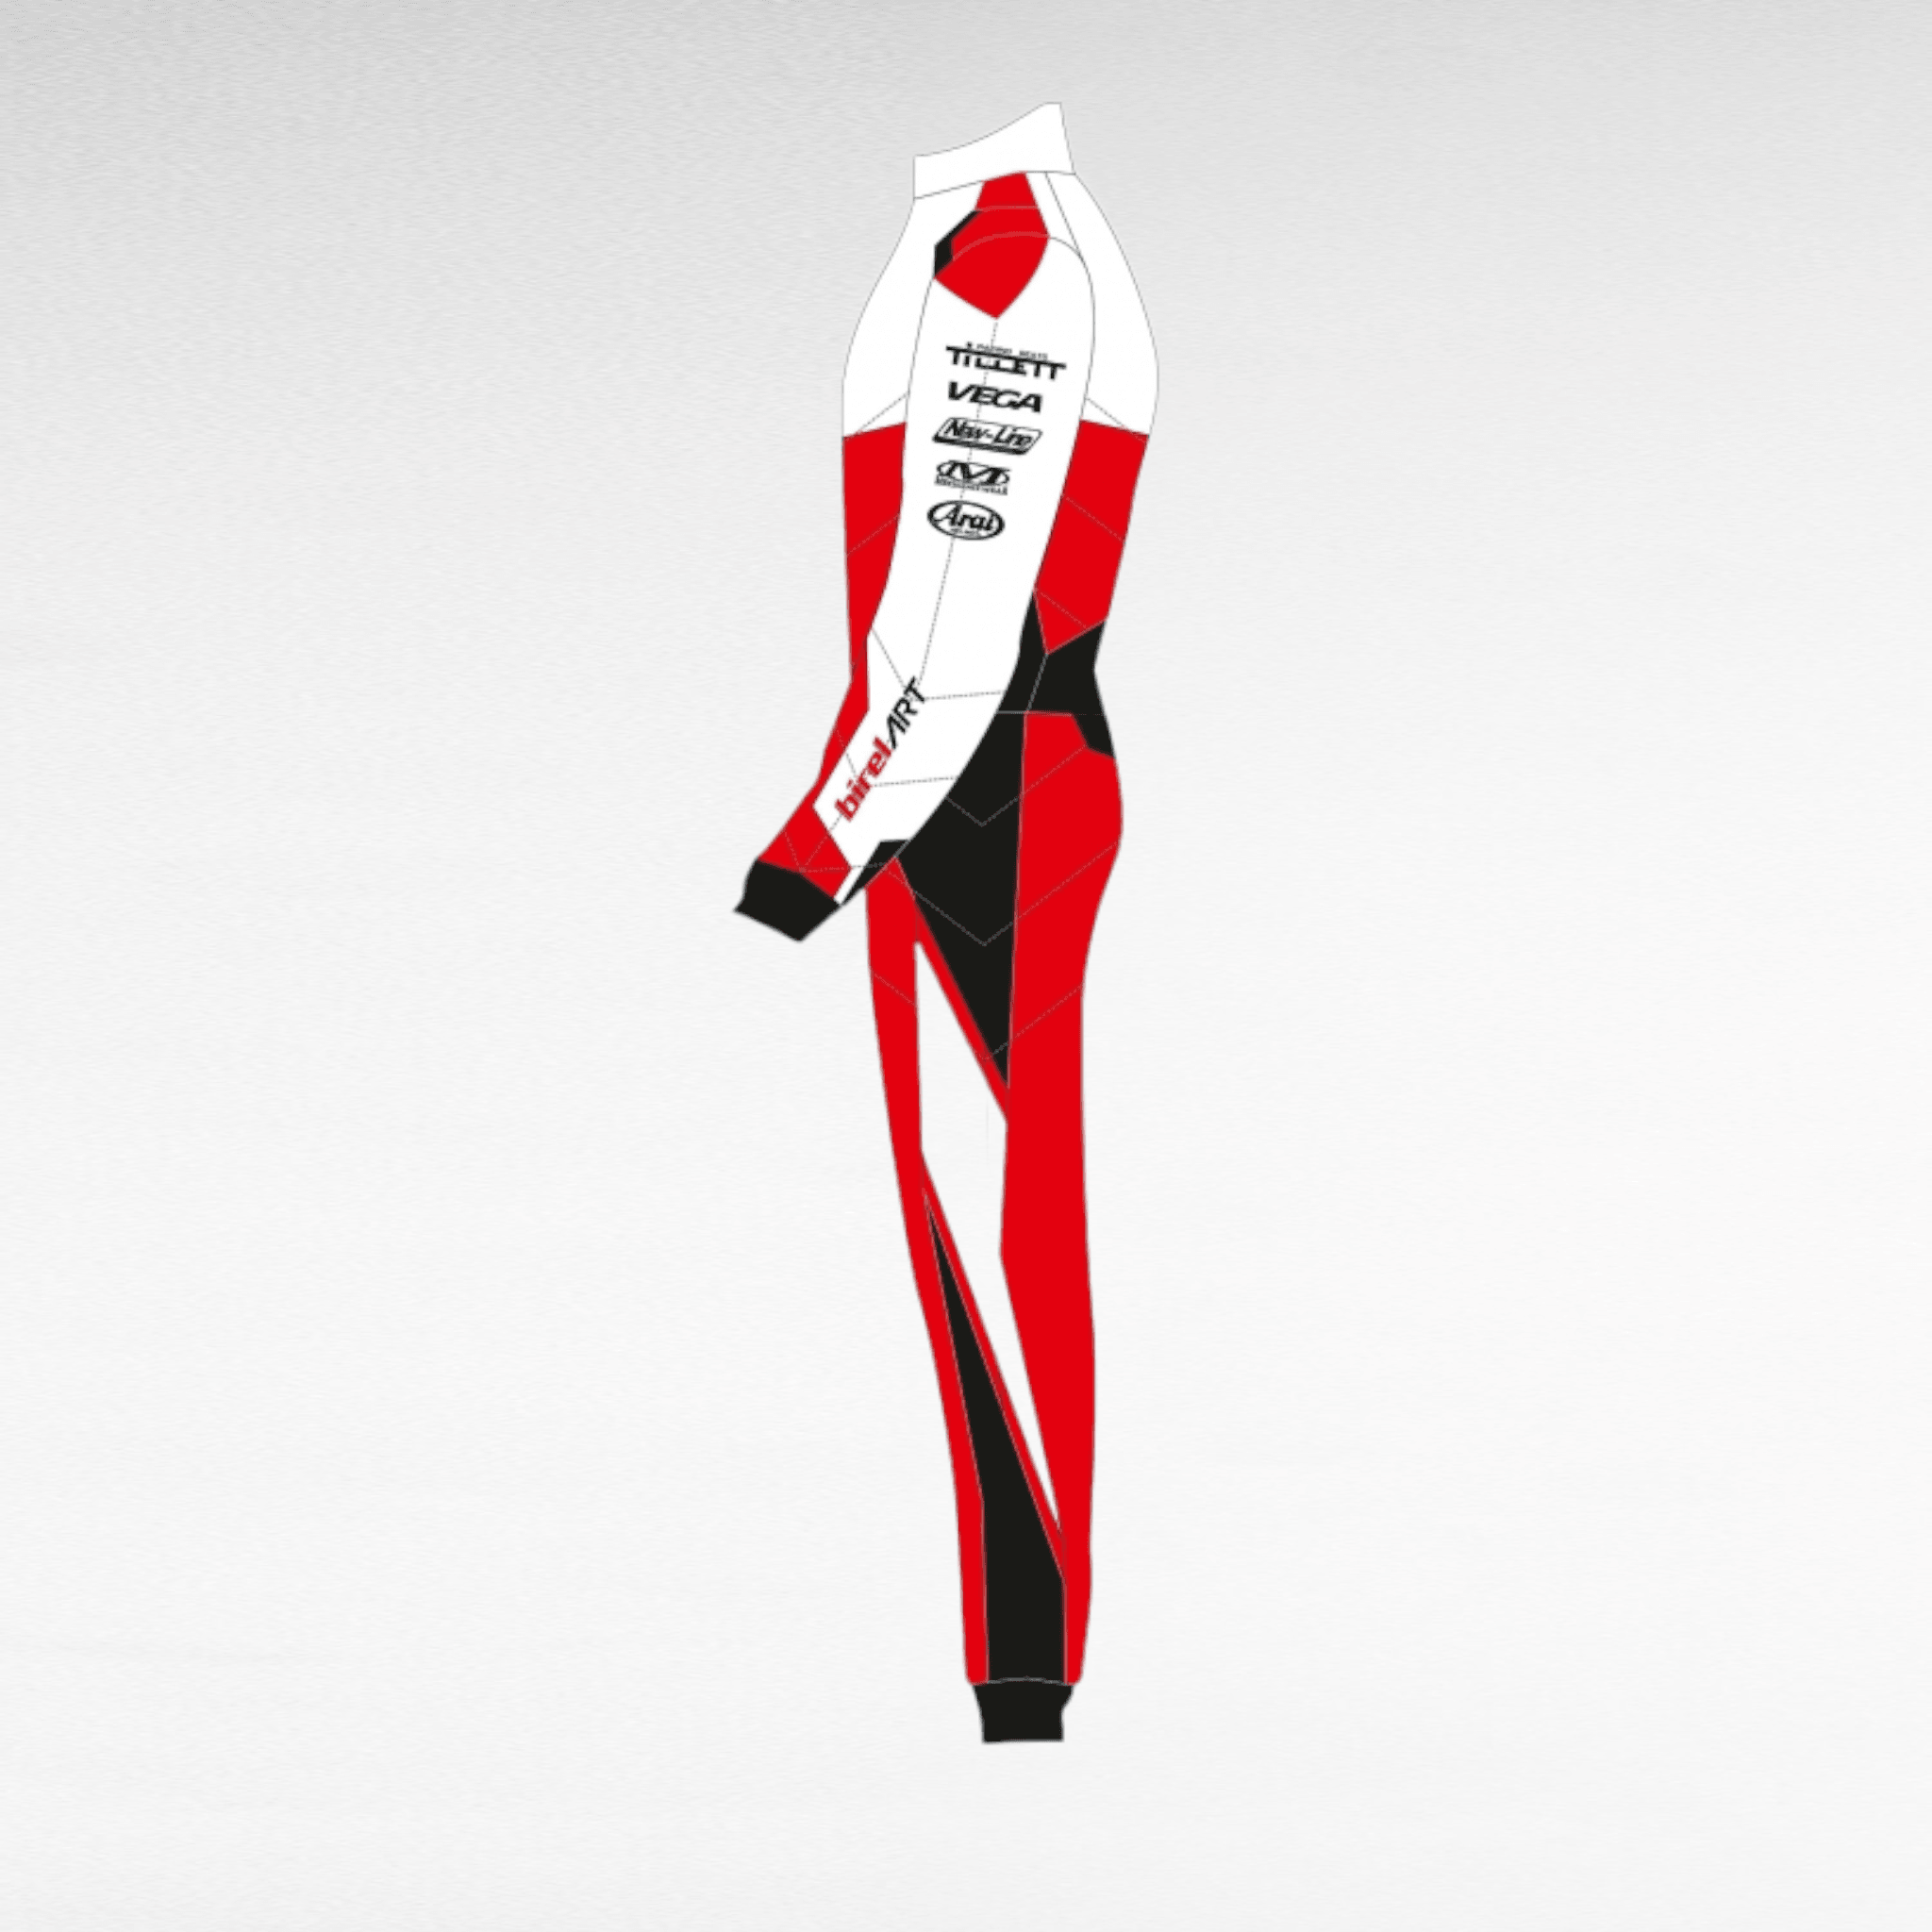 2021 Birel Art Race suit Customized DASH RACEGEAR